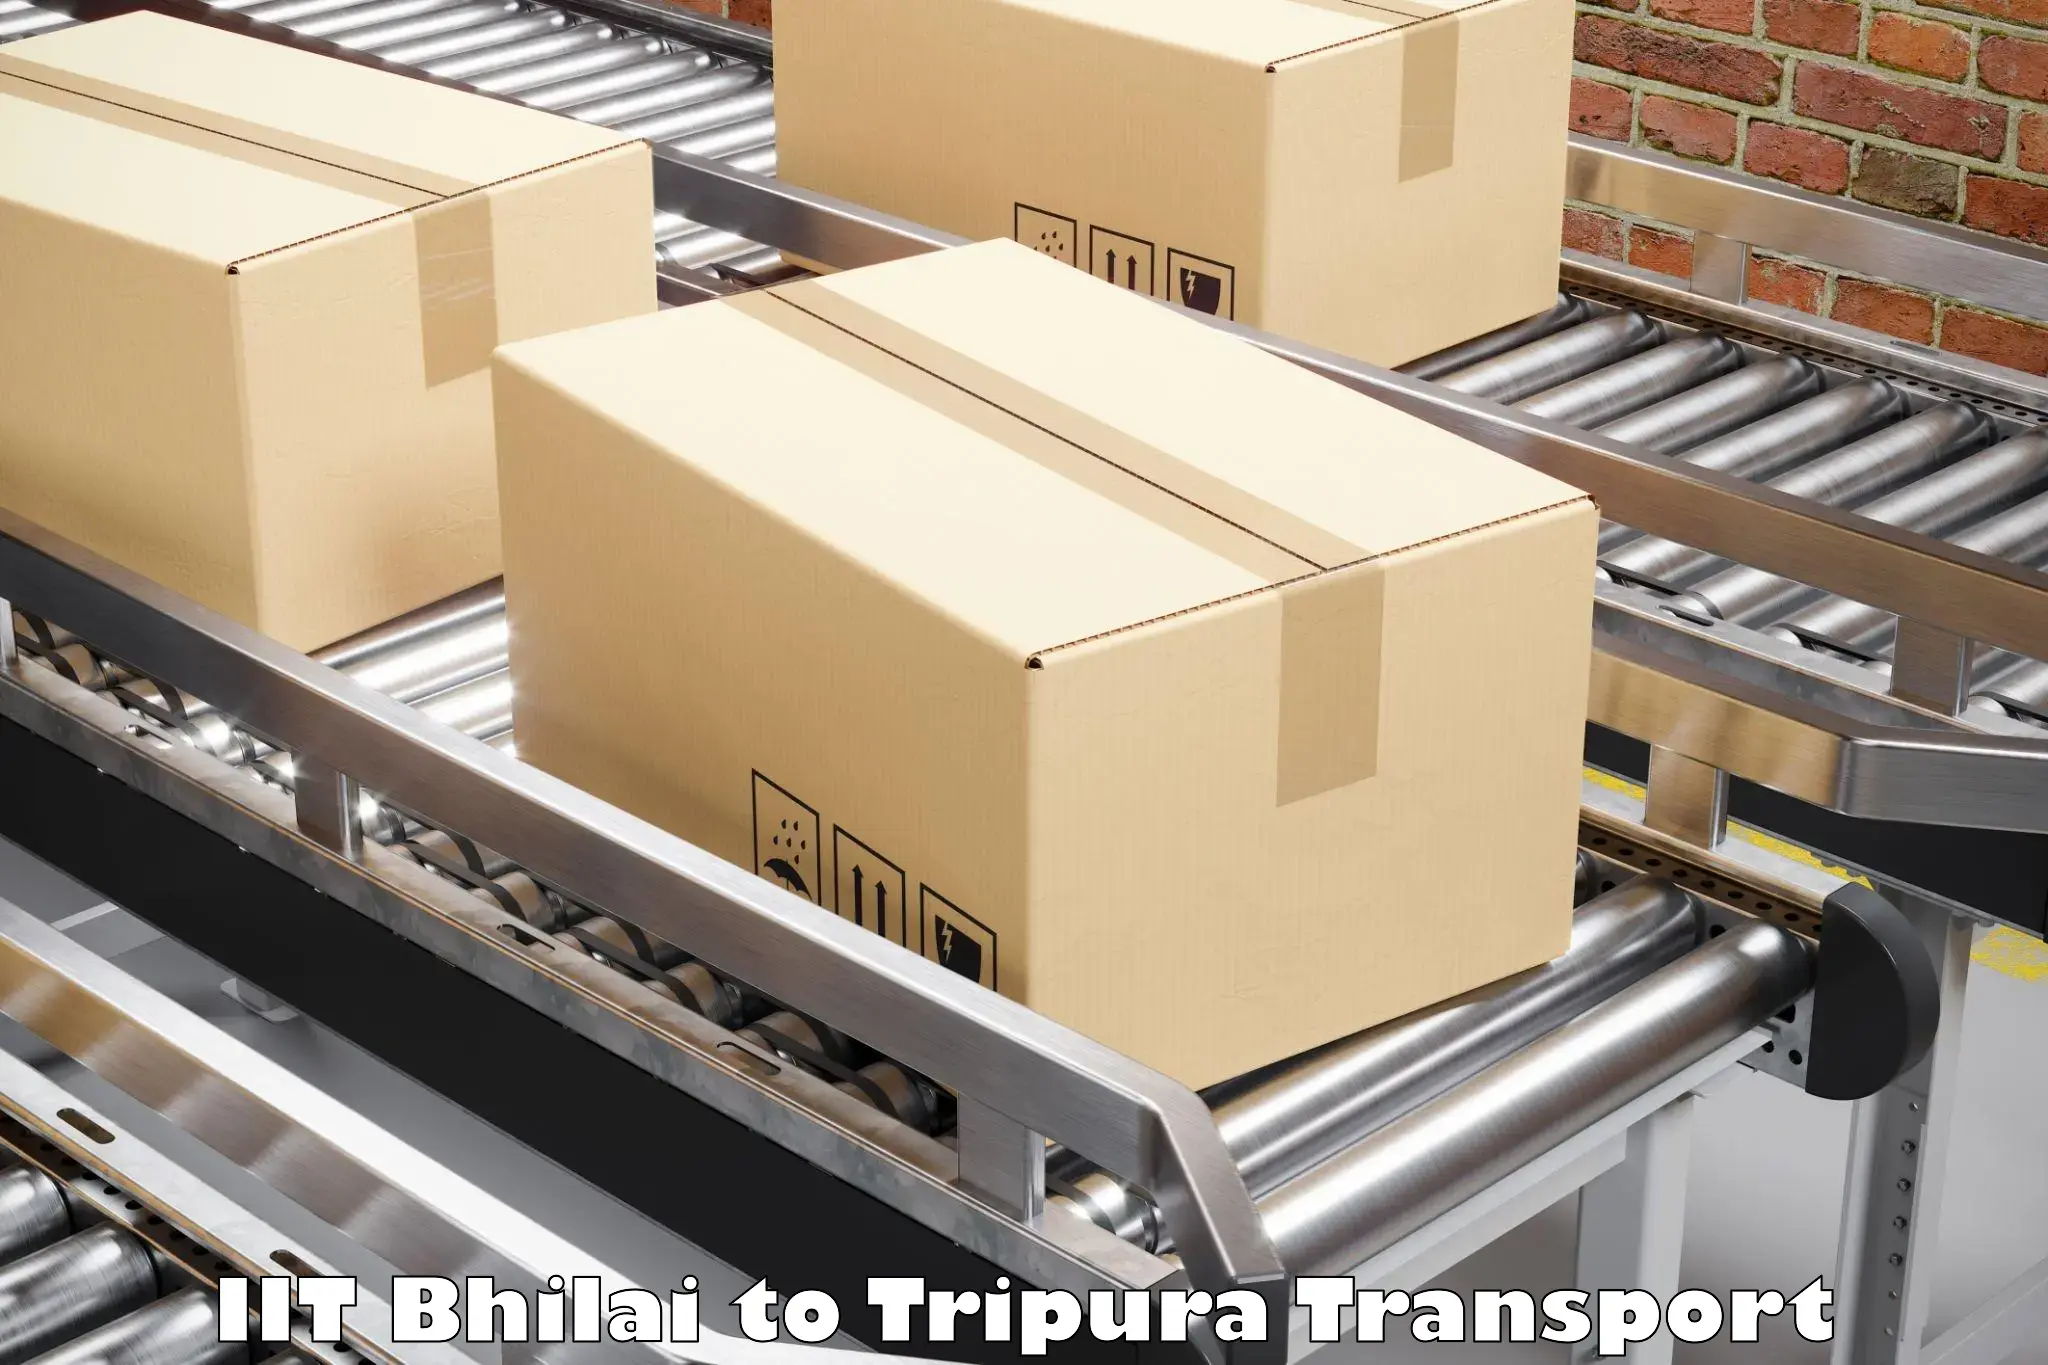 Container transport service IIT Bhilai to Udaipur Tripura